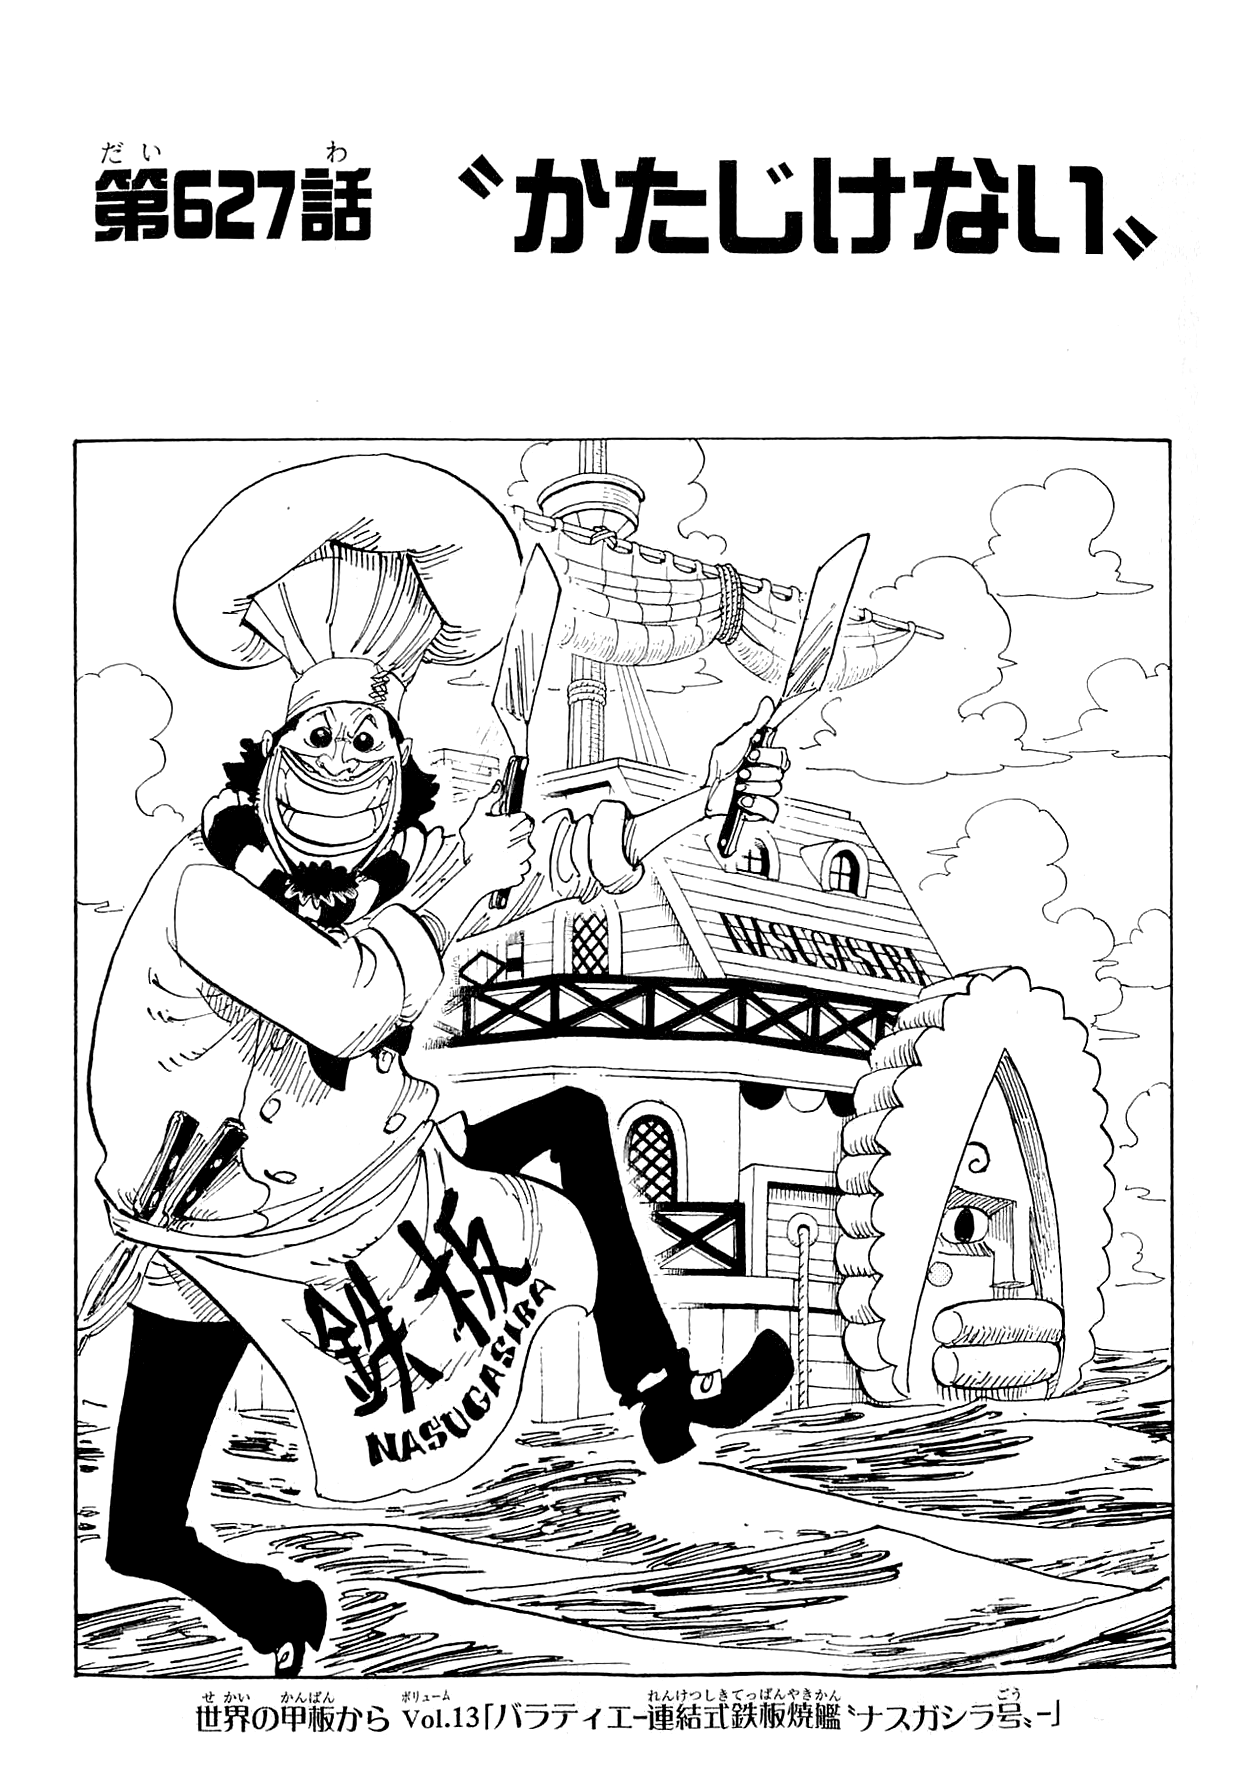 Chapter 627 One Piece Wiki Fandom